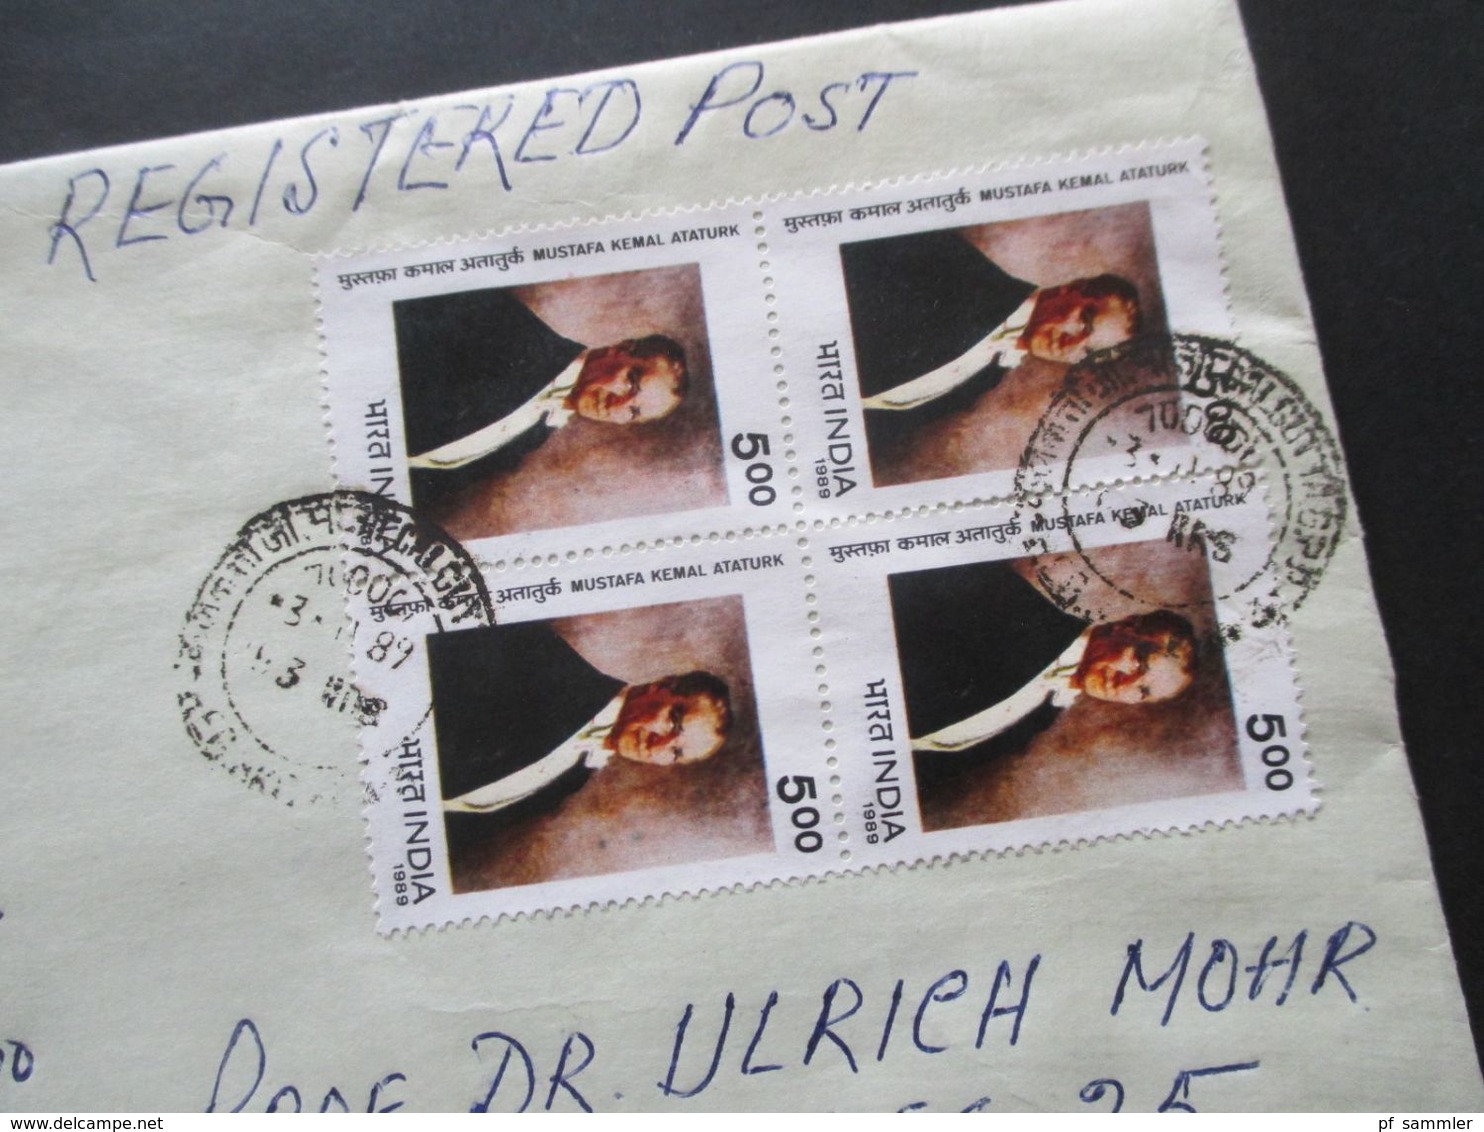 Indien um 1989 Aufkleber Einschreiben aus dem Ausland By Air Mail / Luftpost alle nach Hannover gelaufen!